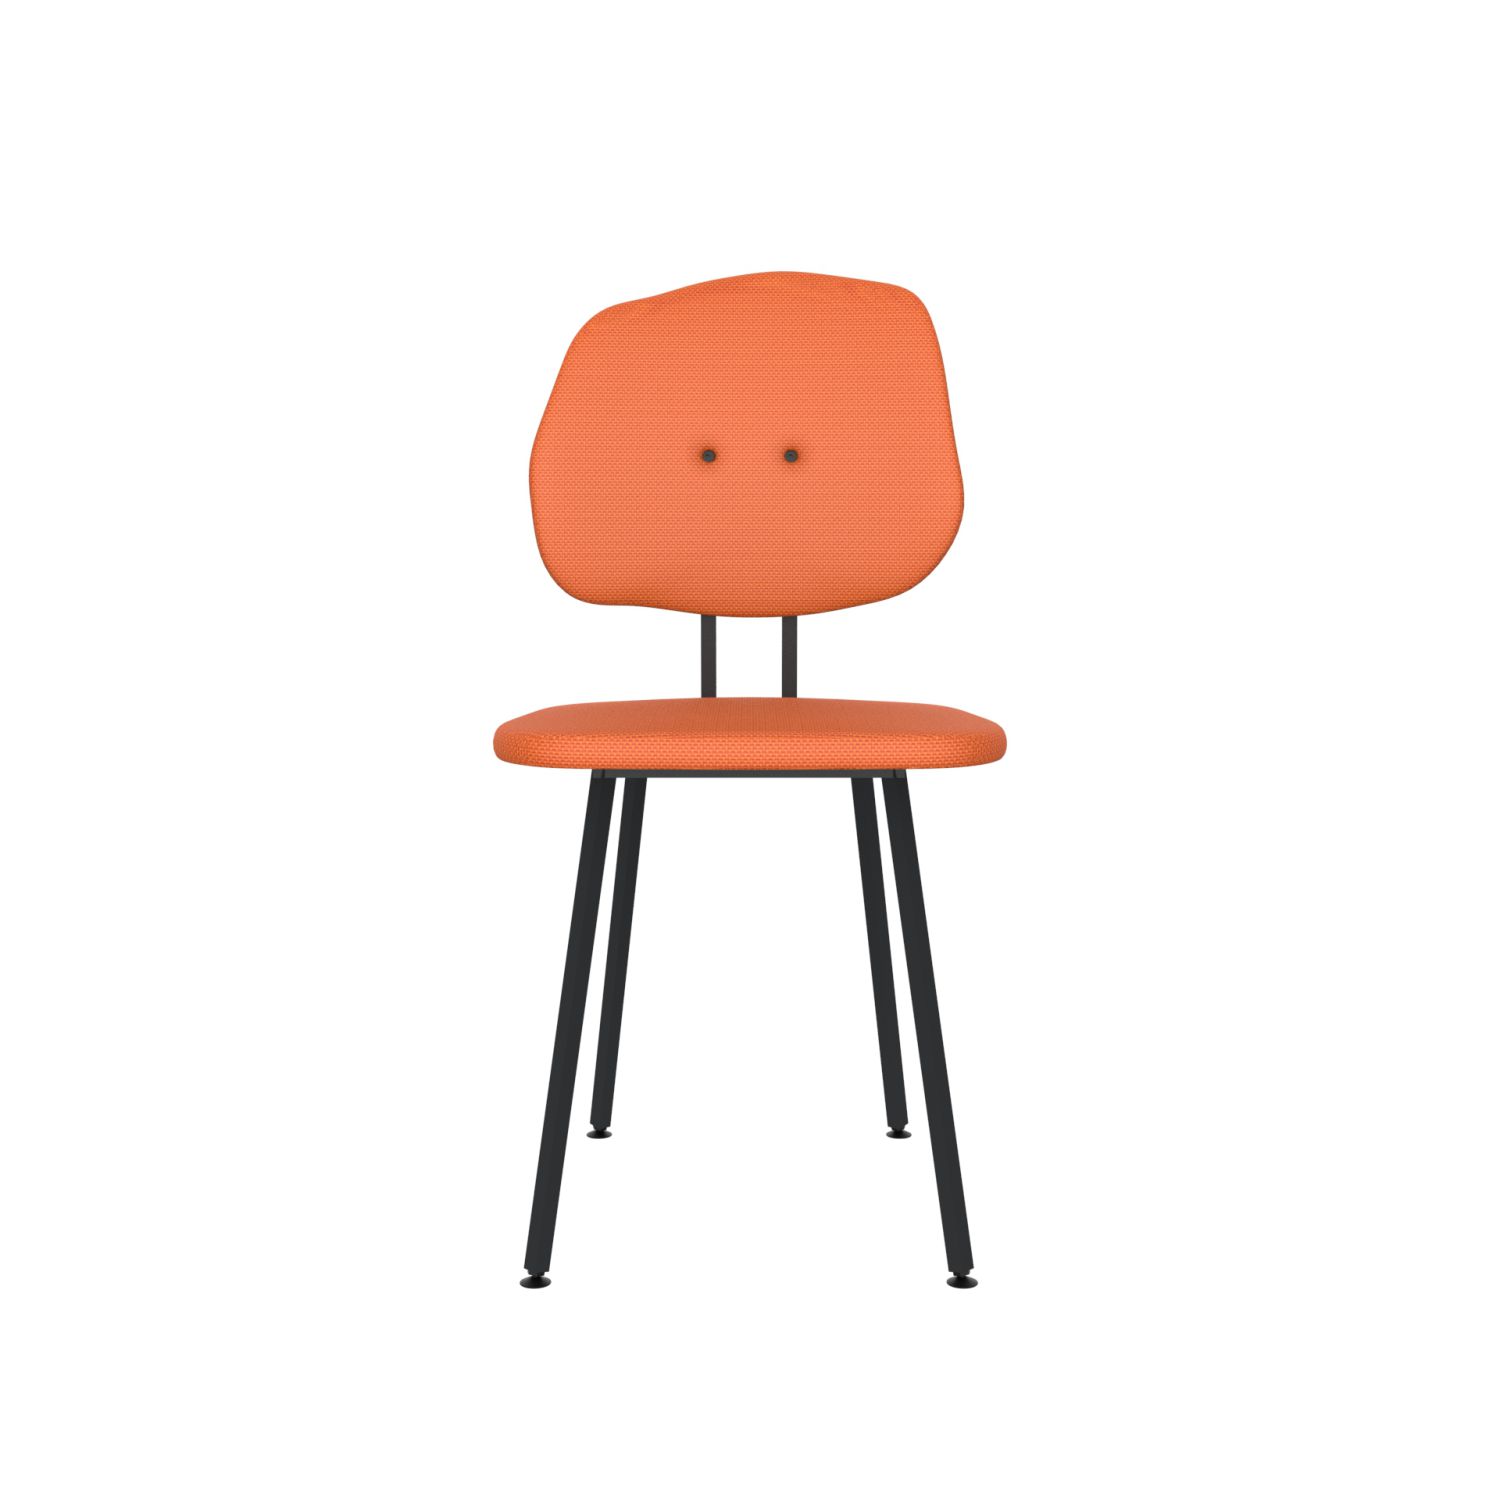 lensvelt maarten baas chair 101 not stackable without armrests backrest g burn orange 102 black ral9005 hard leg ends